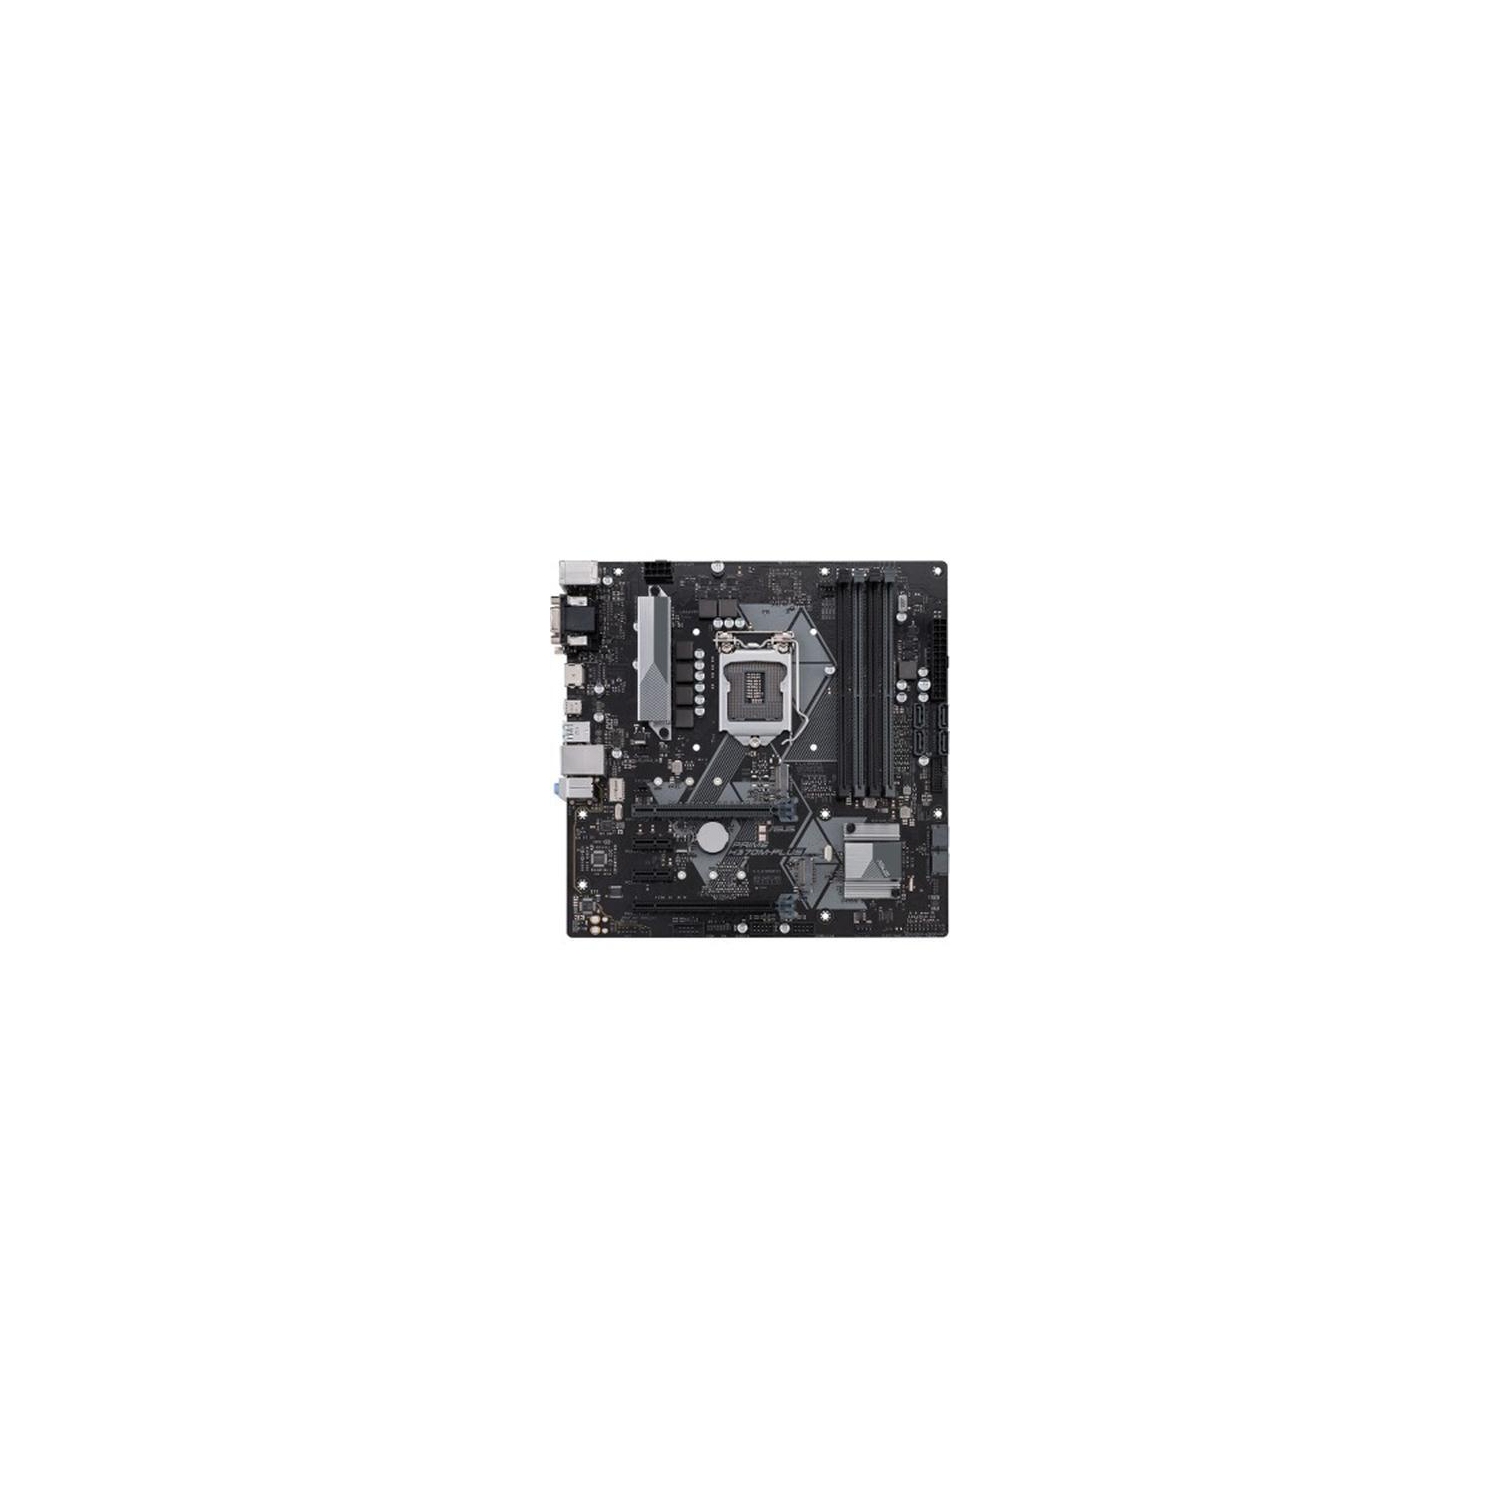 ASUS LGA 1151 Micro-ATX Motherboard (Prime H370M-PLUS/CSM)